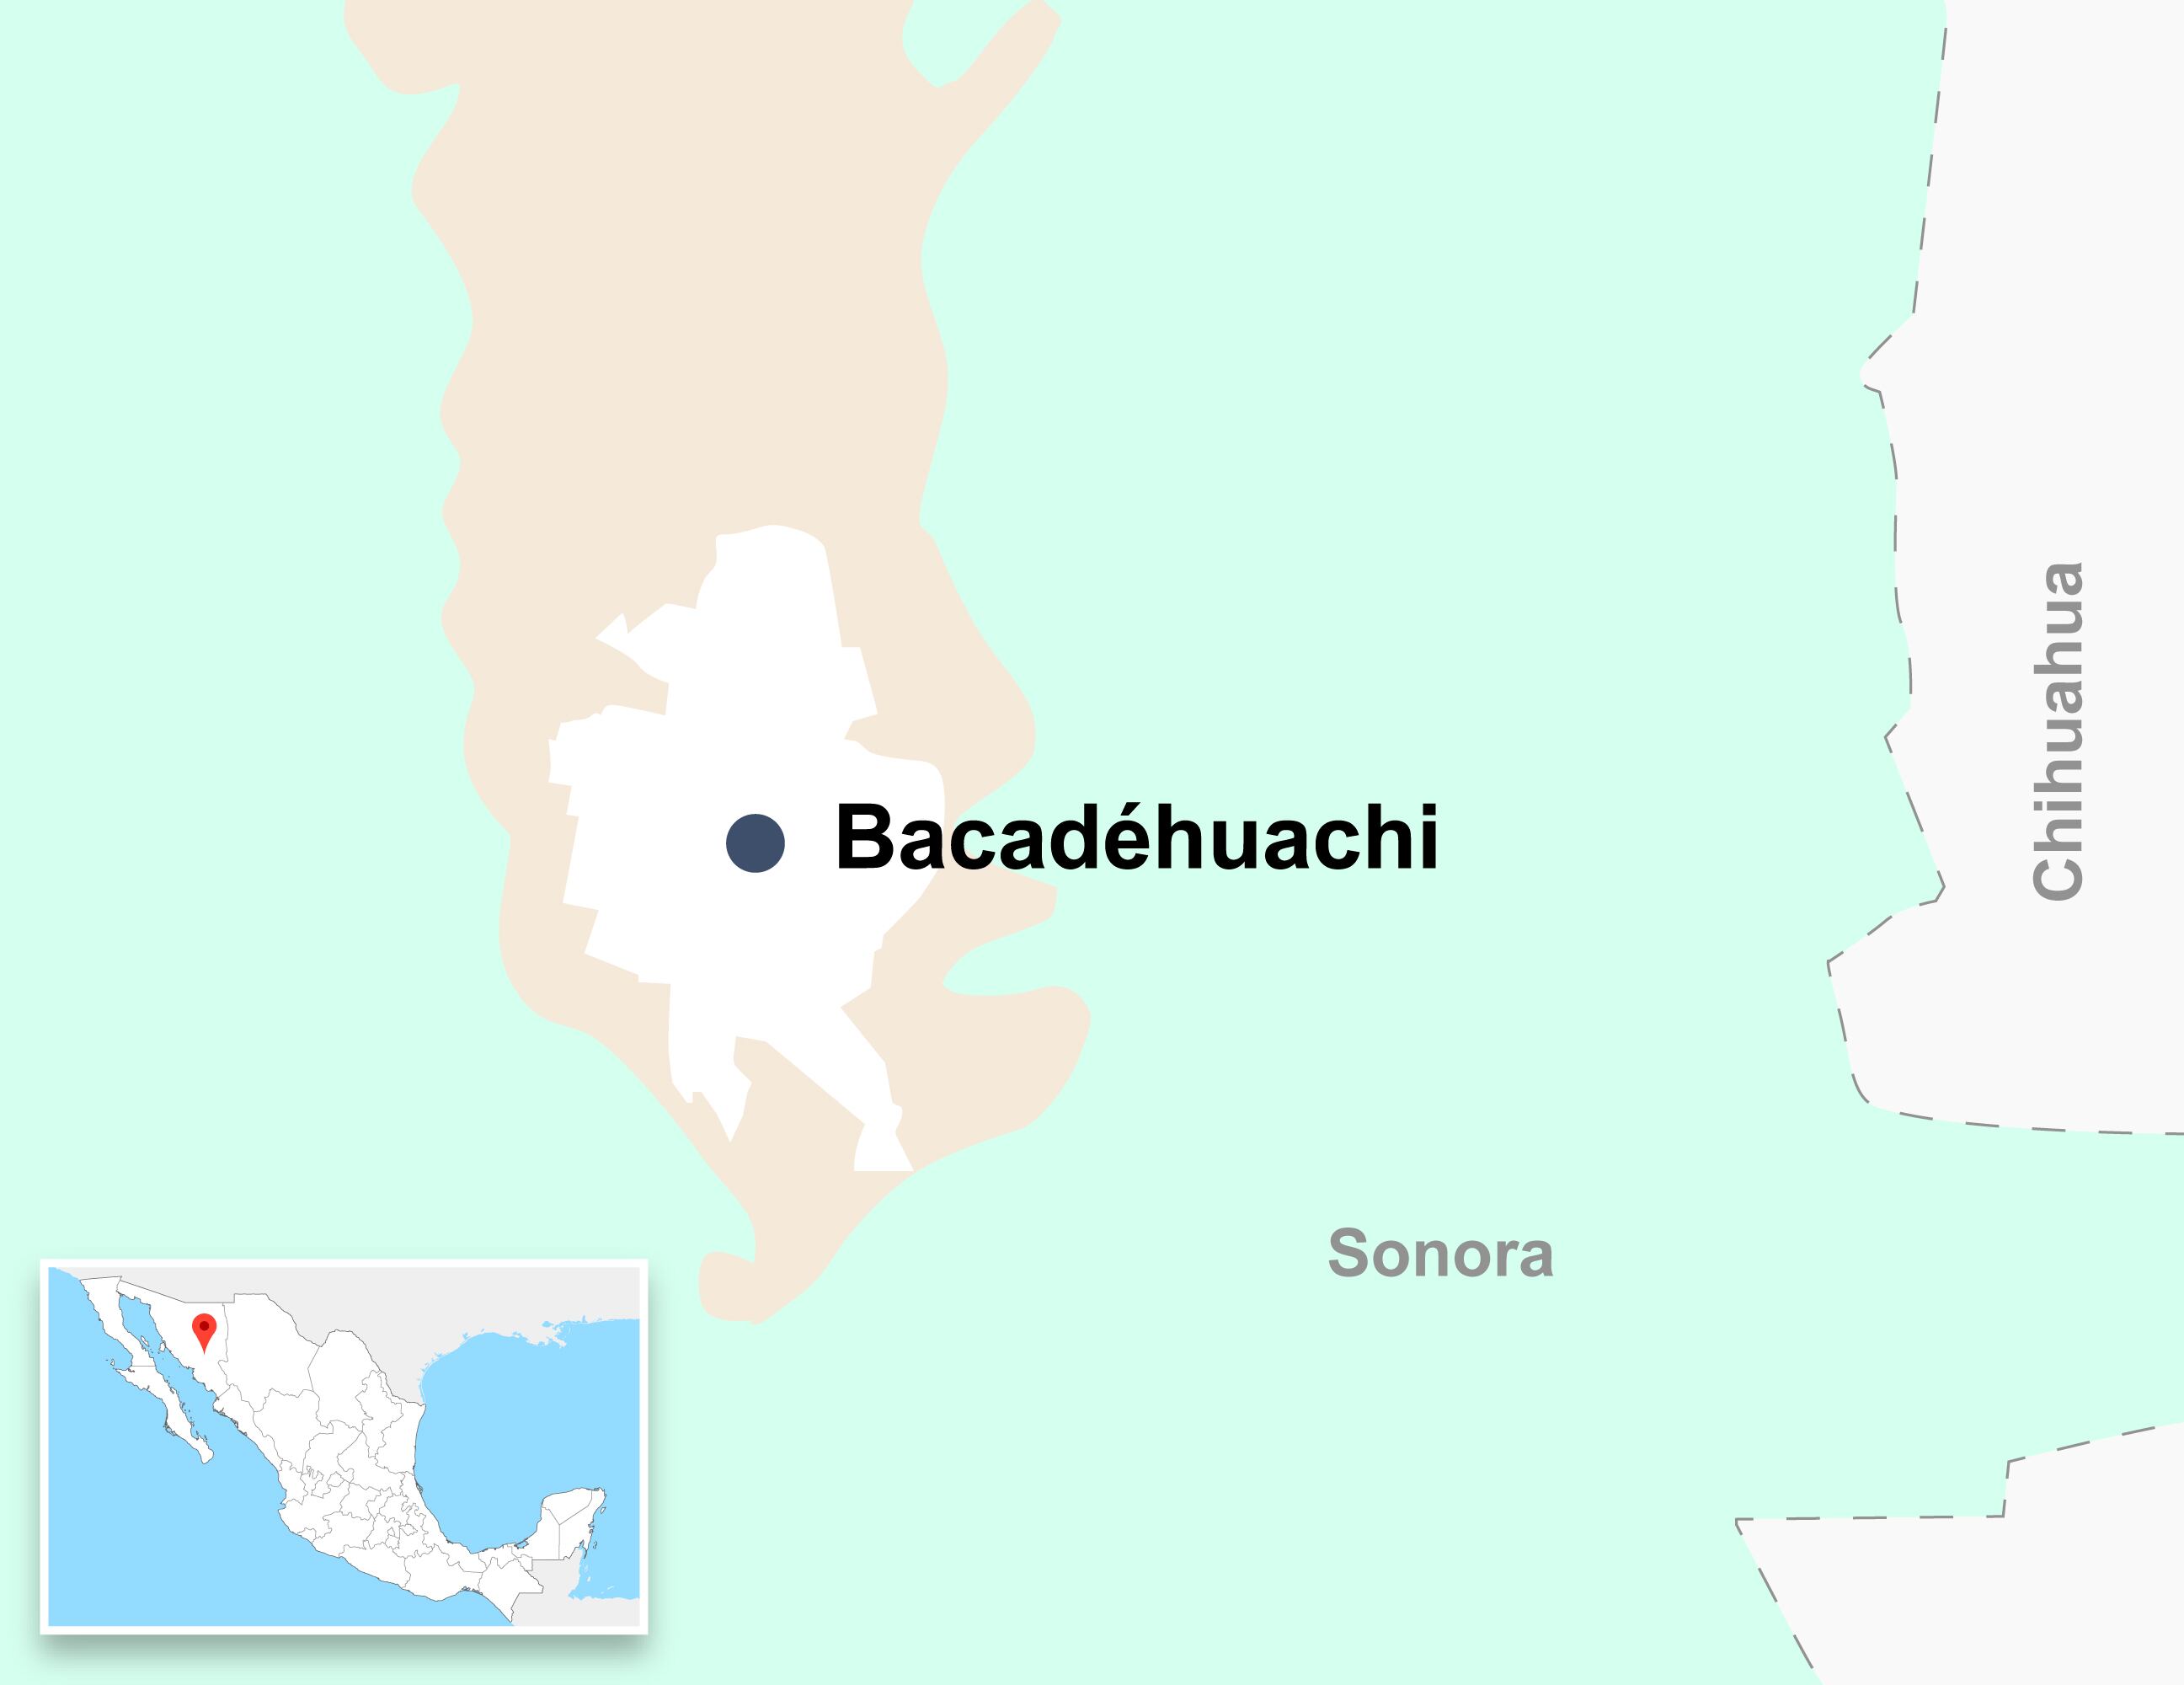 El yacimiento de litio de Bacadéhuachi se ubica en el este de Sonora, hacia la frontera estatal con Chihuahua.